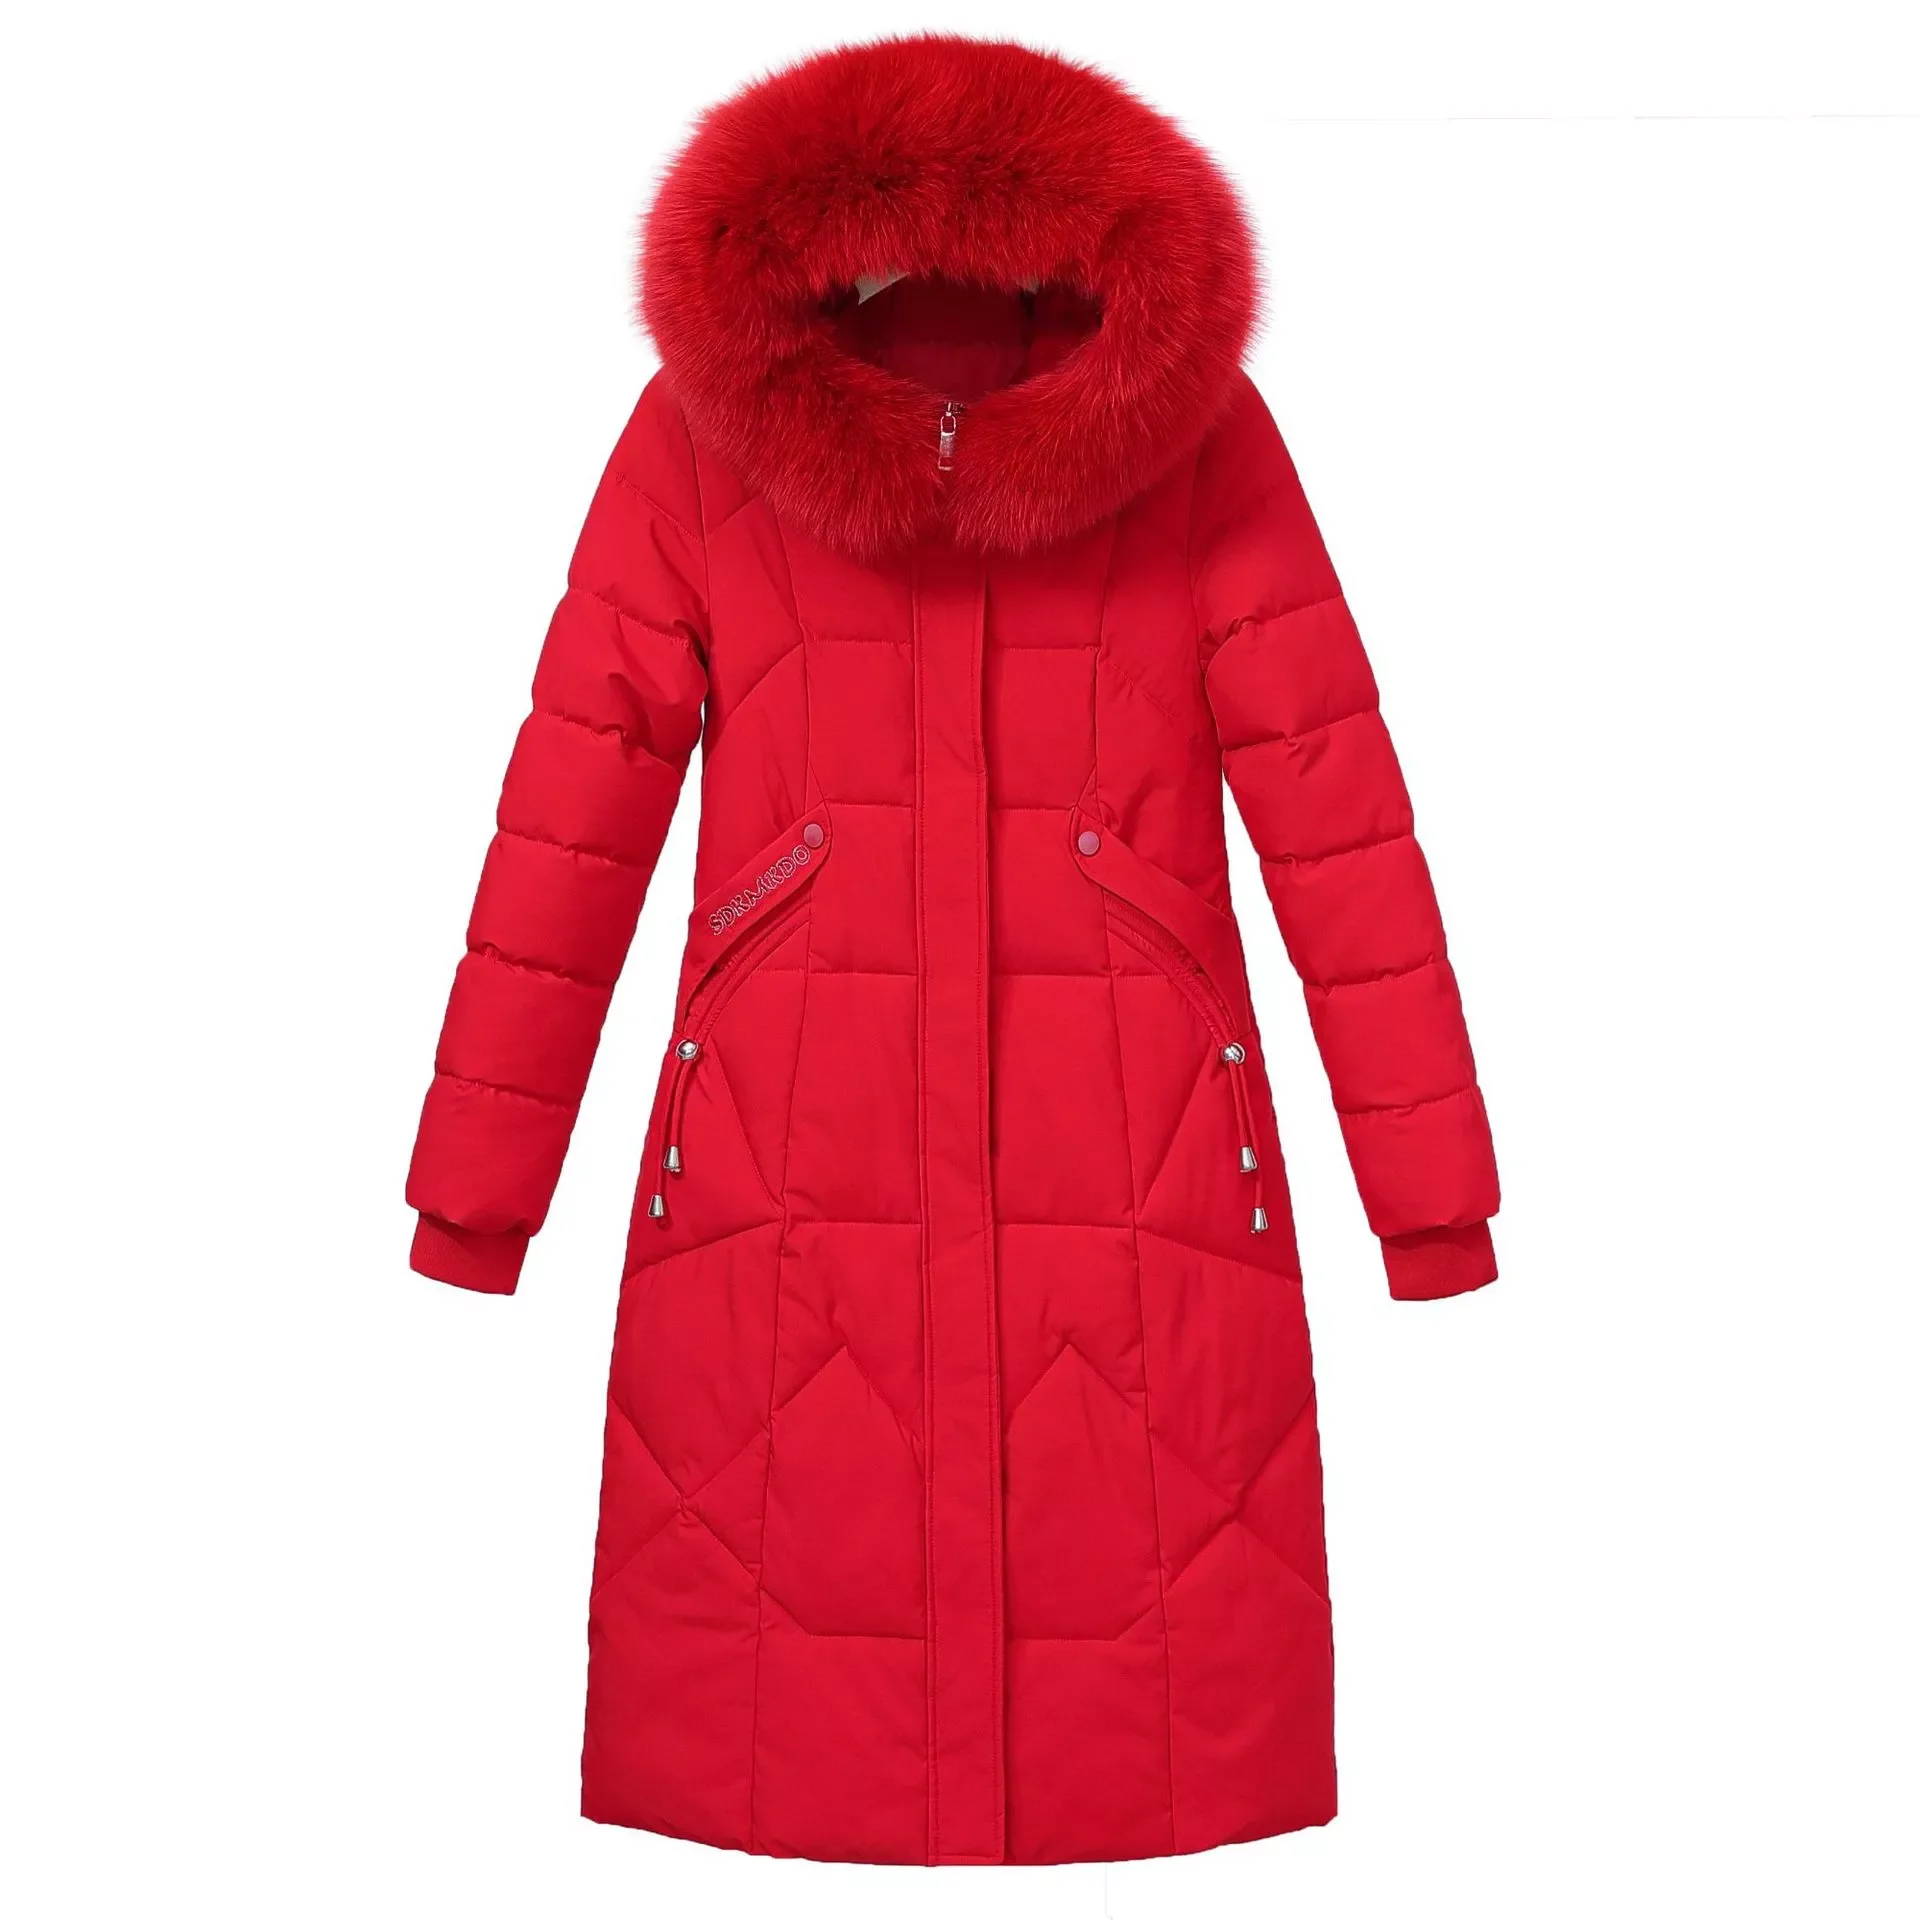 New casual winter women coat jacket 2022 long Winter jacket Women fur collar parkas female Slim Winter Warm Coat Women enlarge